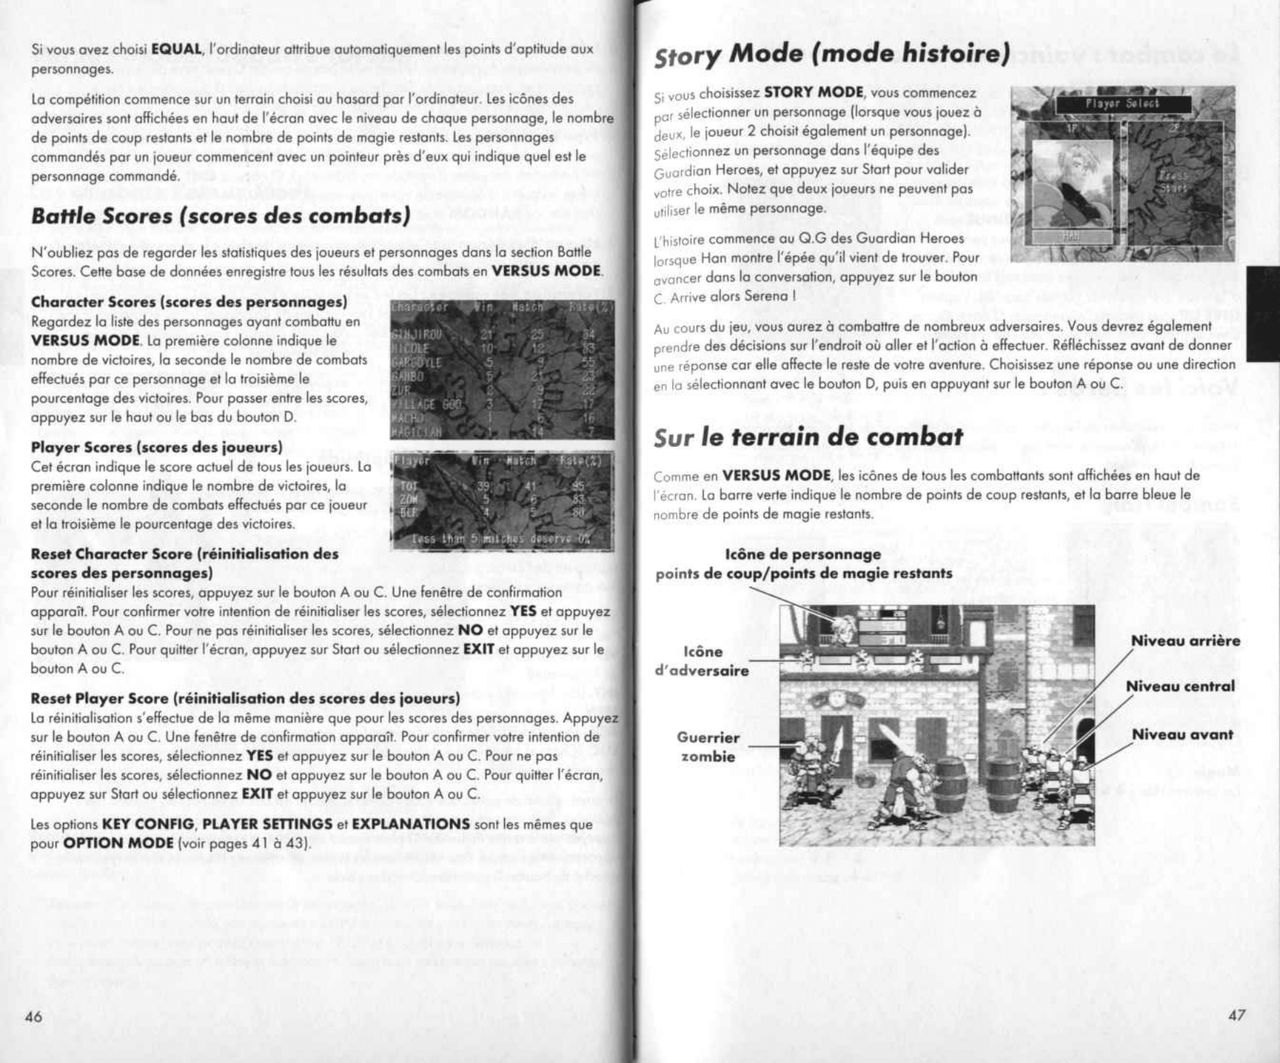 Guardian Heroes (Saturn) Game Manual 24